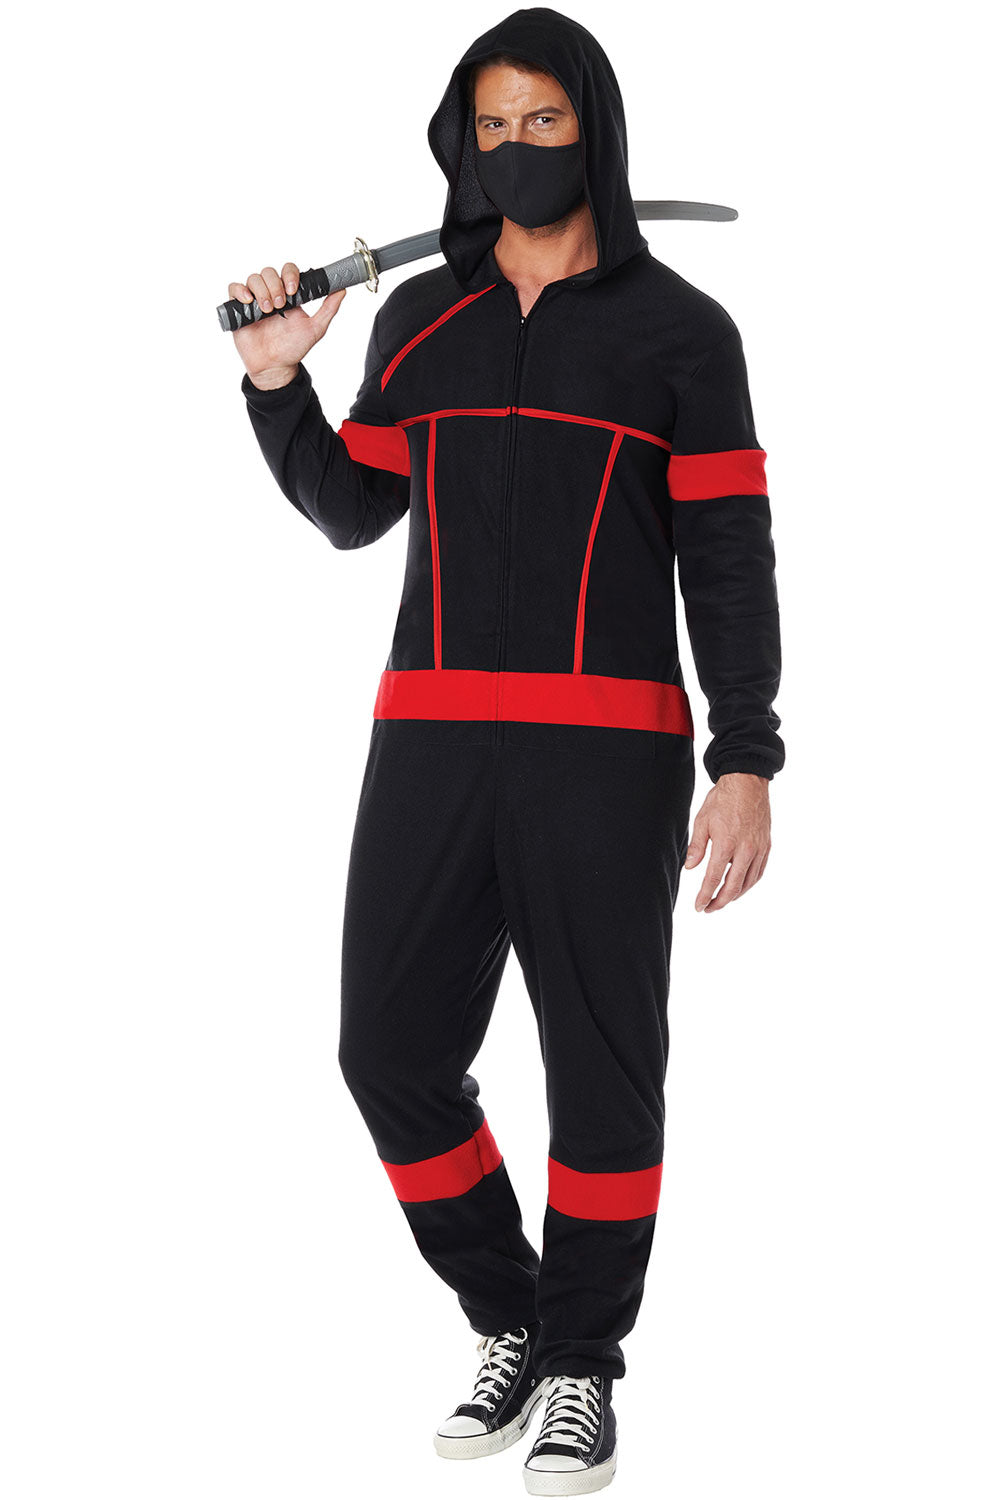 Ninja Onesie / Adult California Costume 5221-172